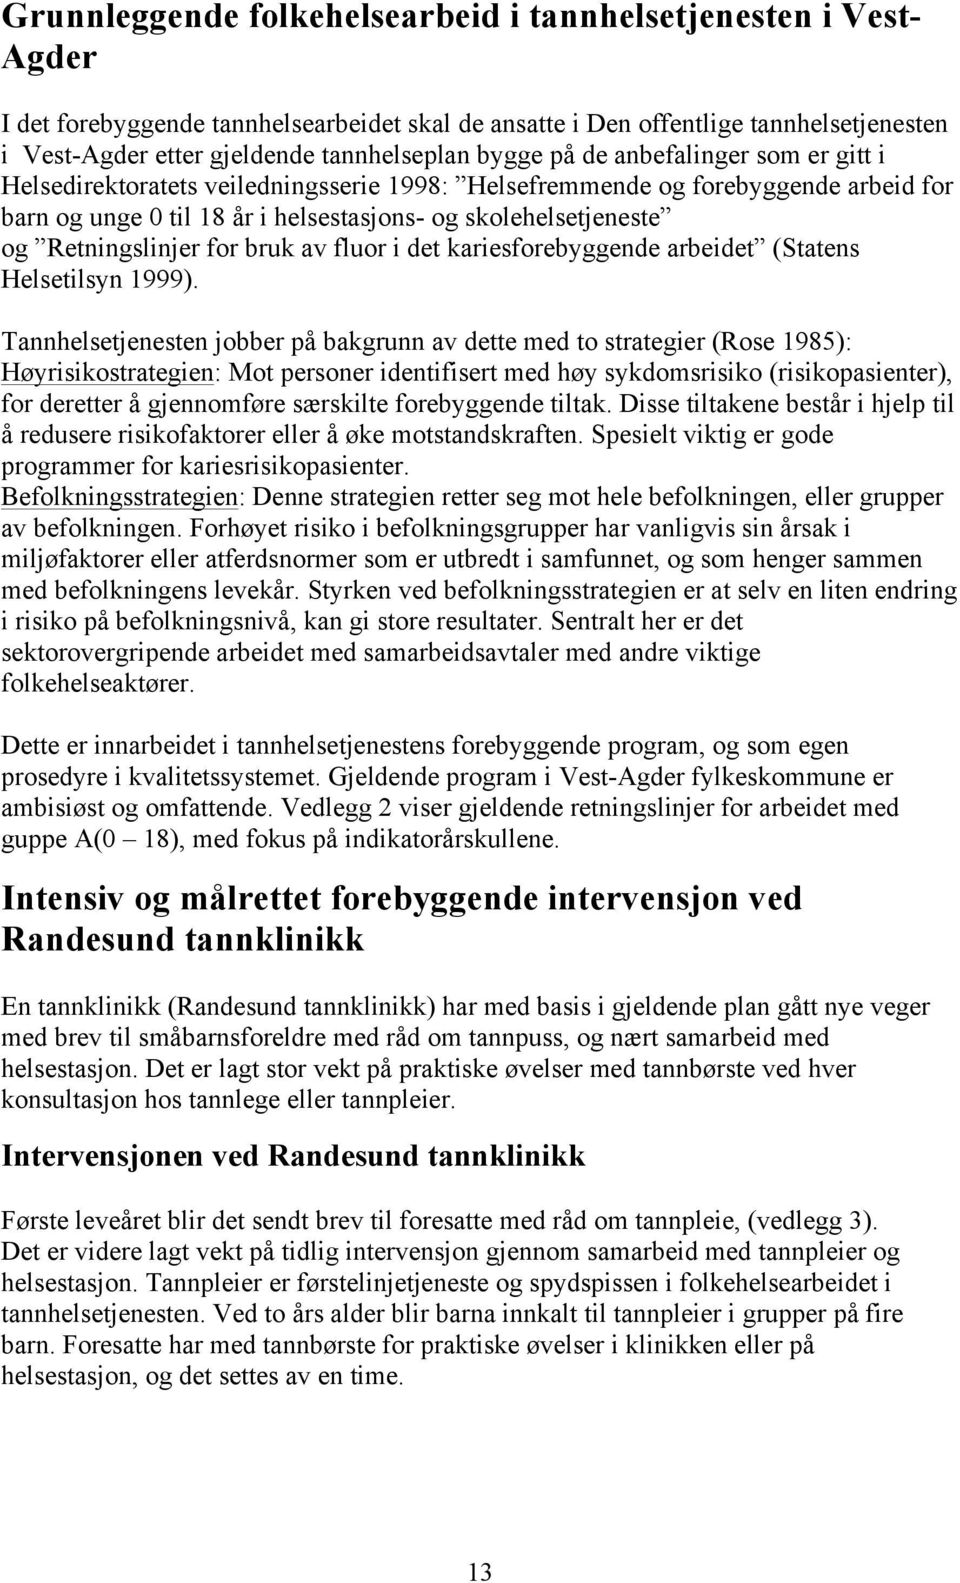 Retningslinjer for bruk av fluor i det kariesforebyggende arbeidet (Statens Helsetilsyn 1999).